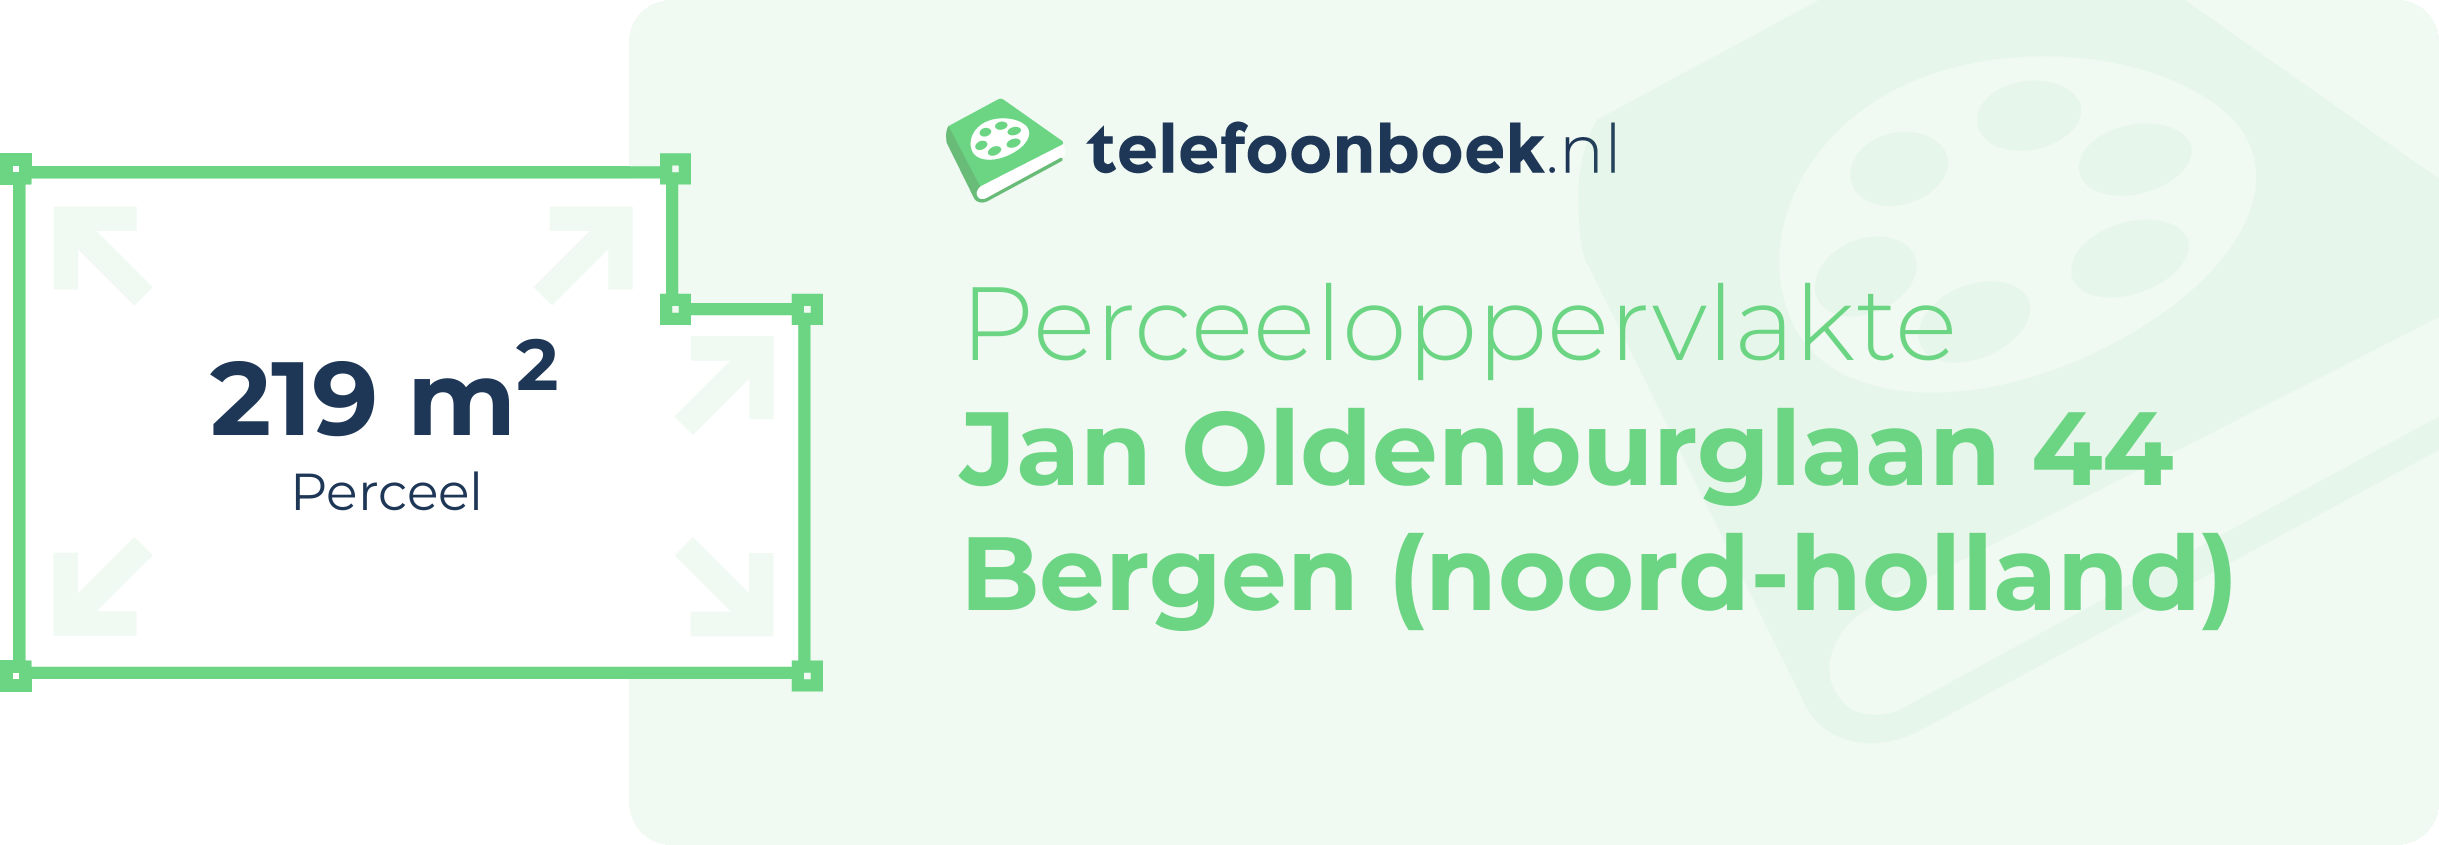 Perceeloppervlakte Jan Oldenburglaan 44 Bergen (Noord-Holland)